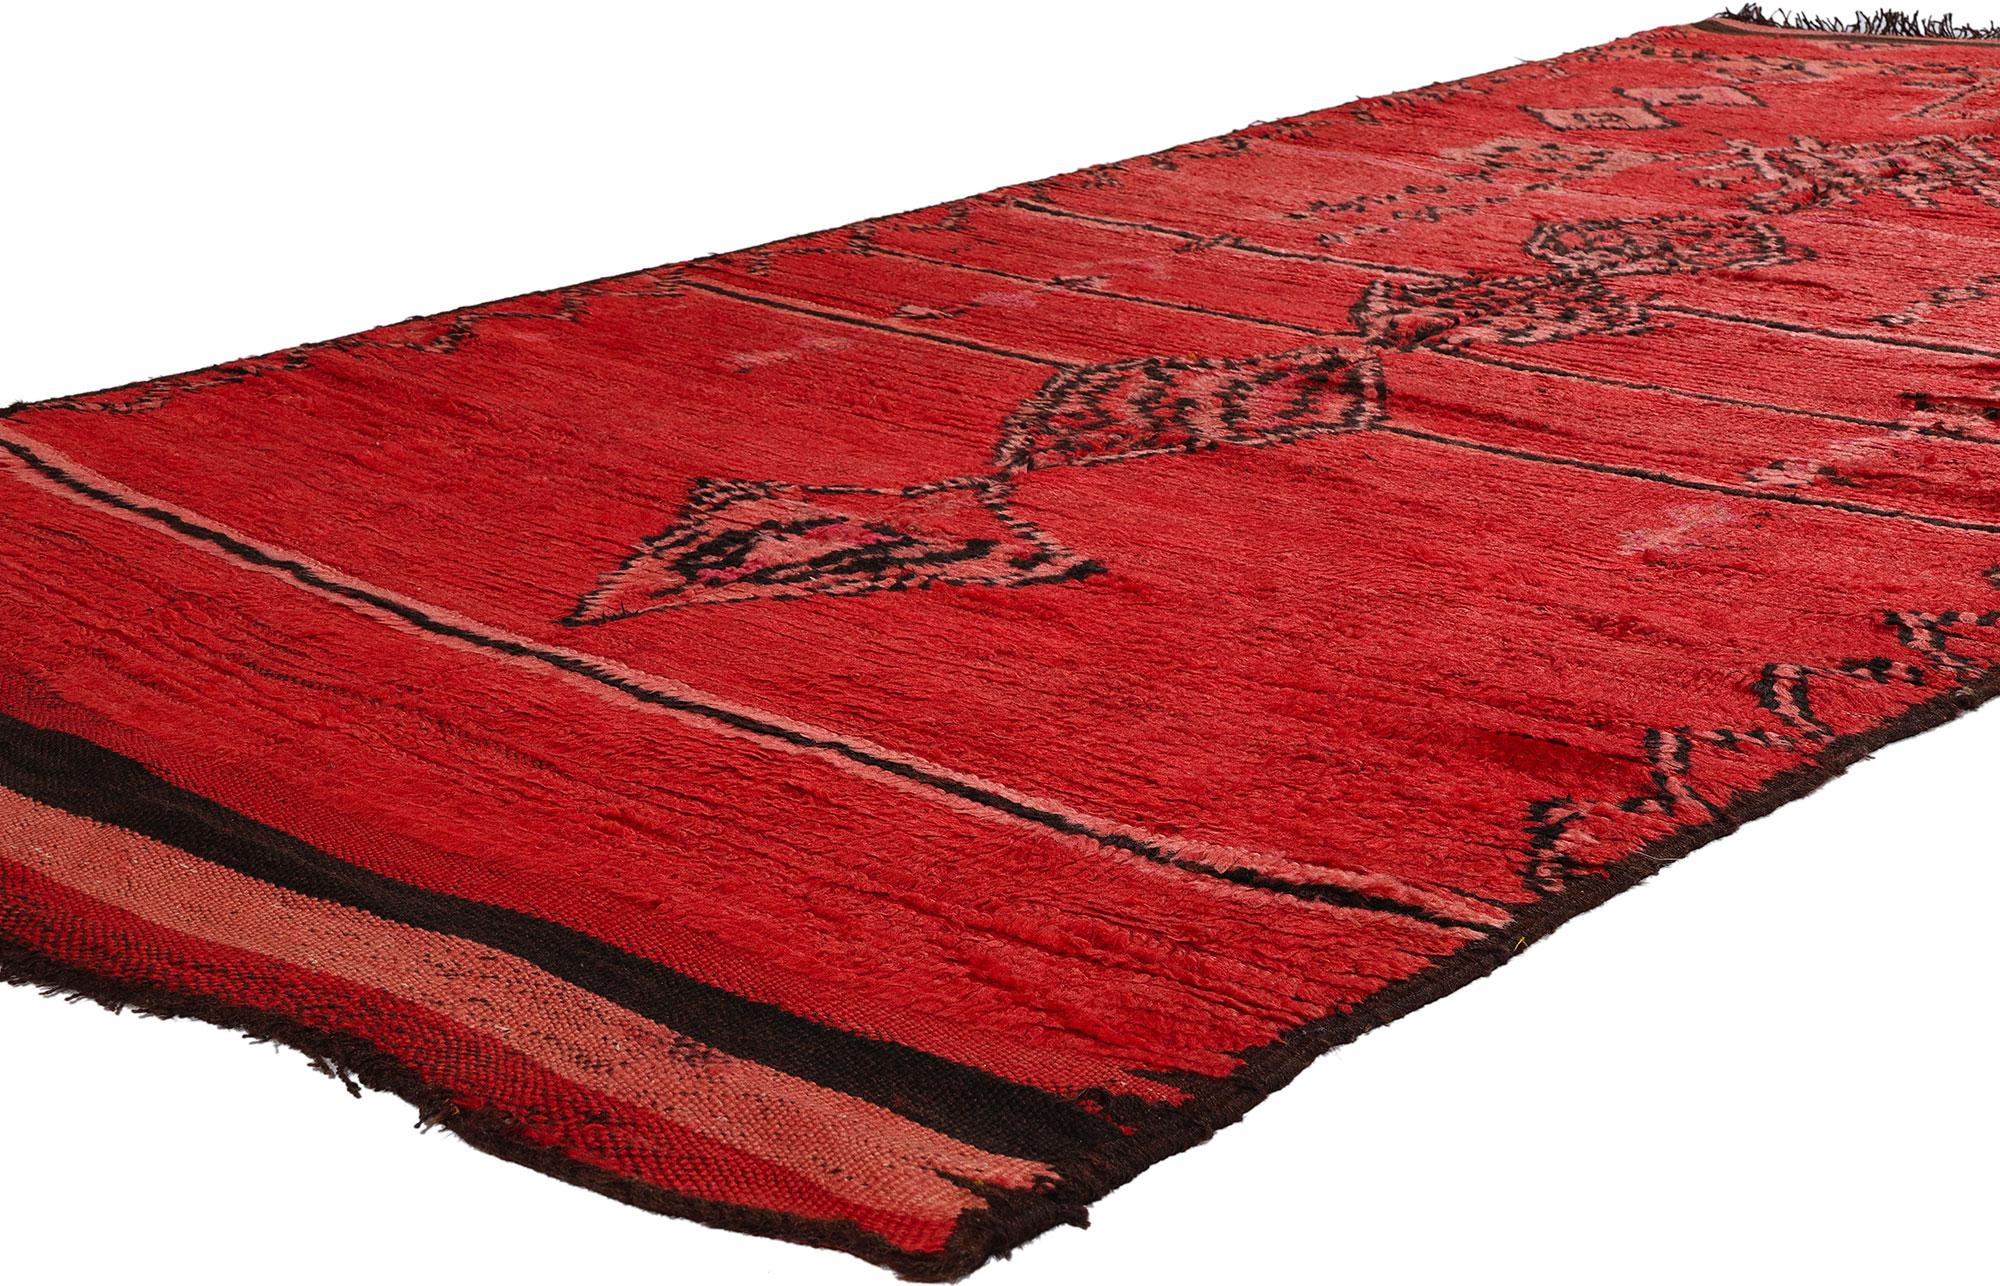 21809 Vintage Red Talsint Marokkanischer Teppich, 04'06 x 11'04. Tauchen Sie ein in die fesselnde Opulenz dieses handgeknüpften marokkanischen Teppichs aus roter Talsint-Wolle, der aus der lebhaften Region Figuig im Nordosten Marokkos stammt, die